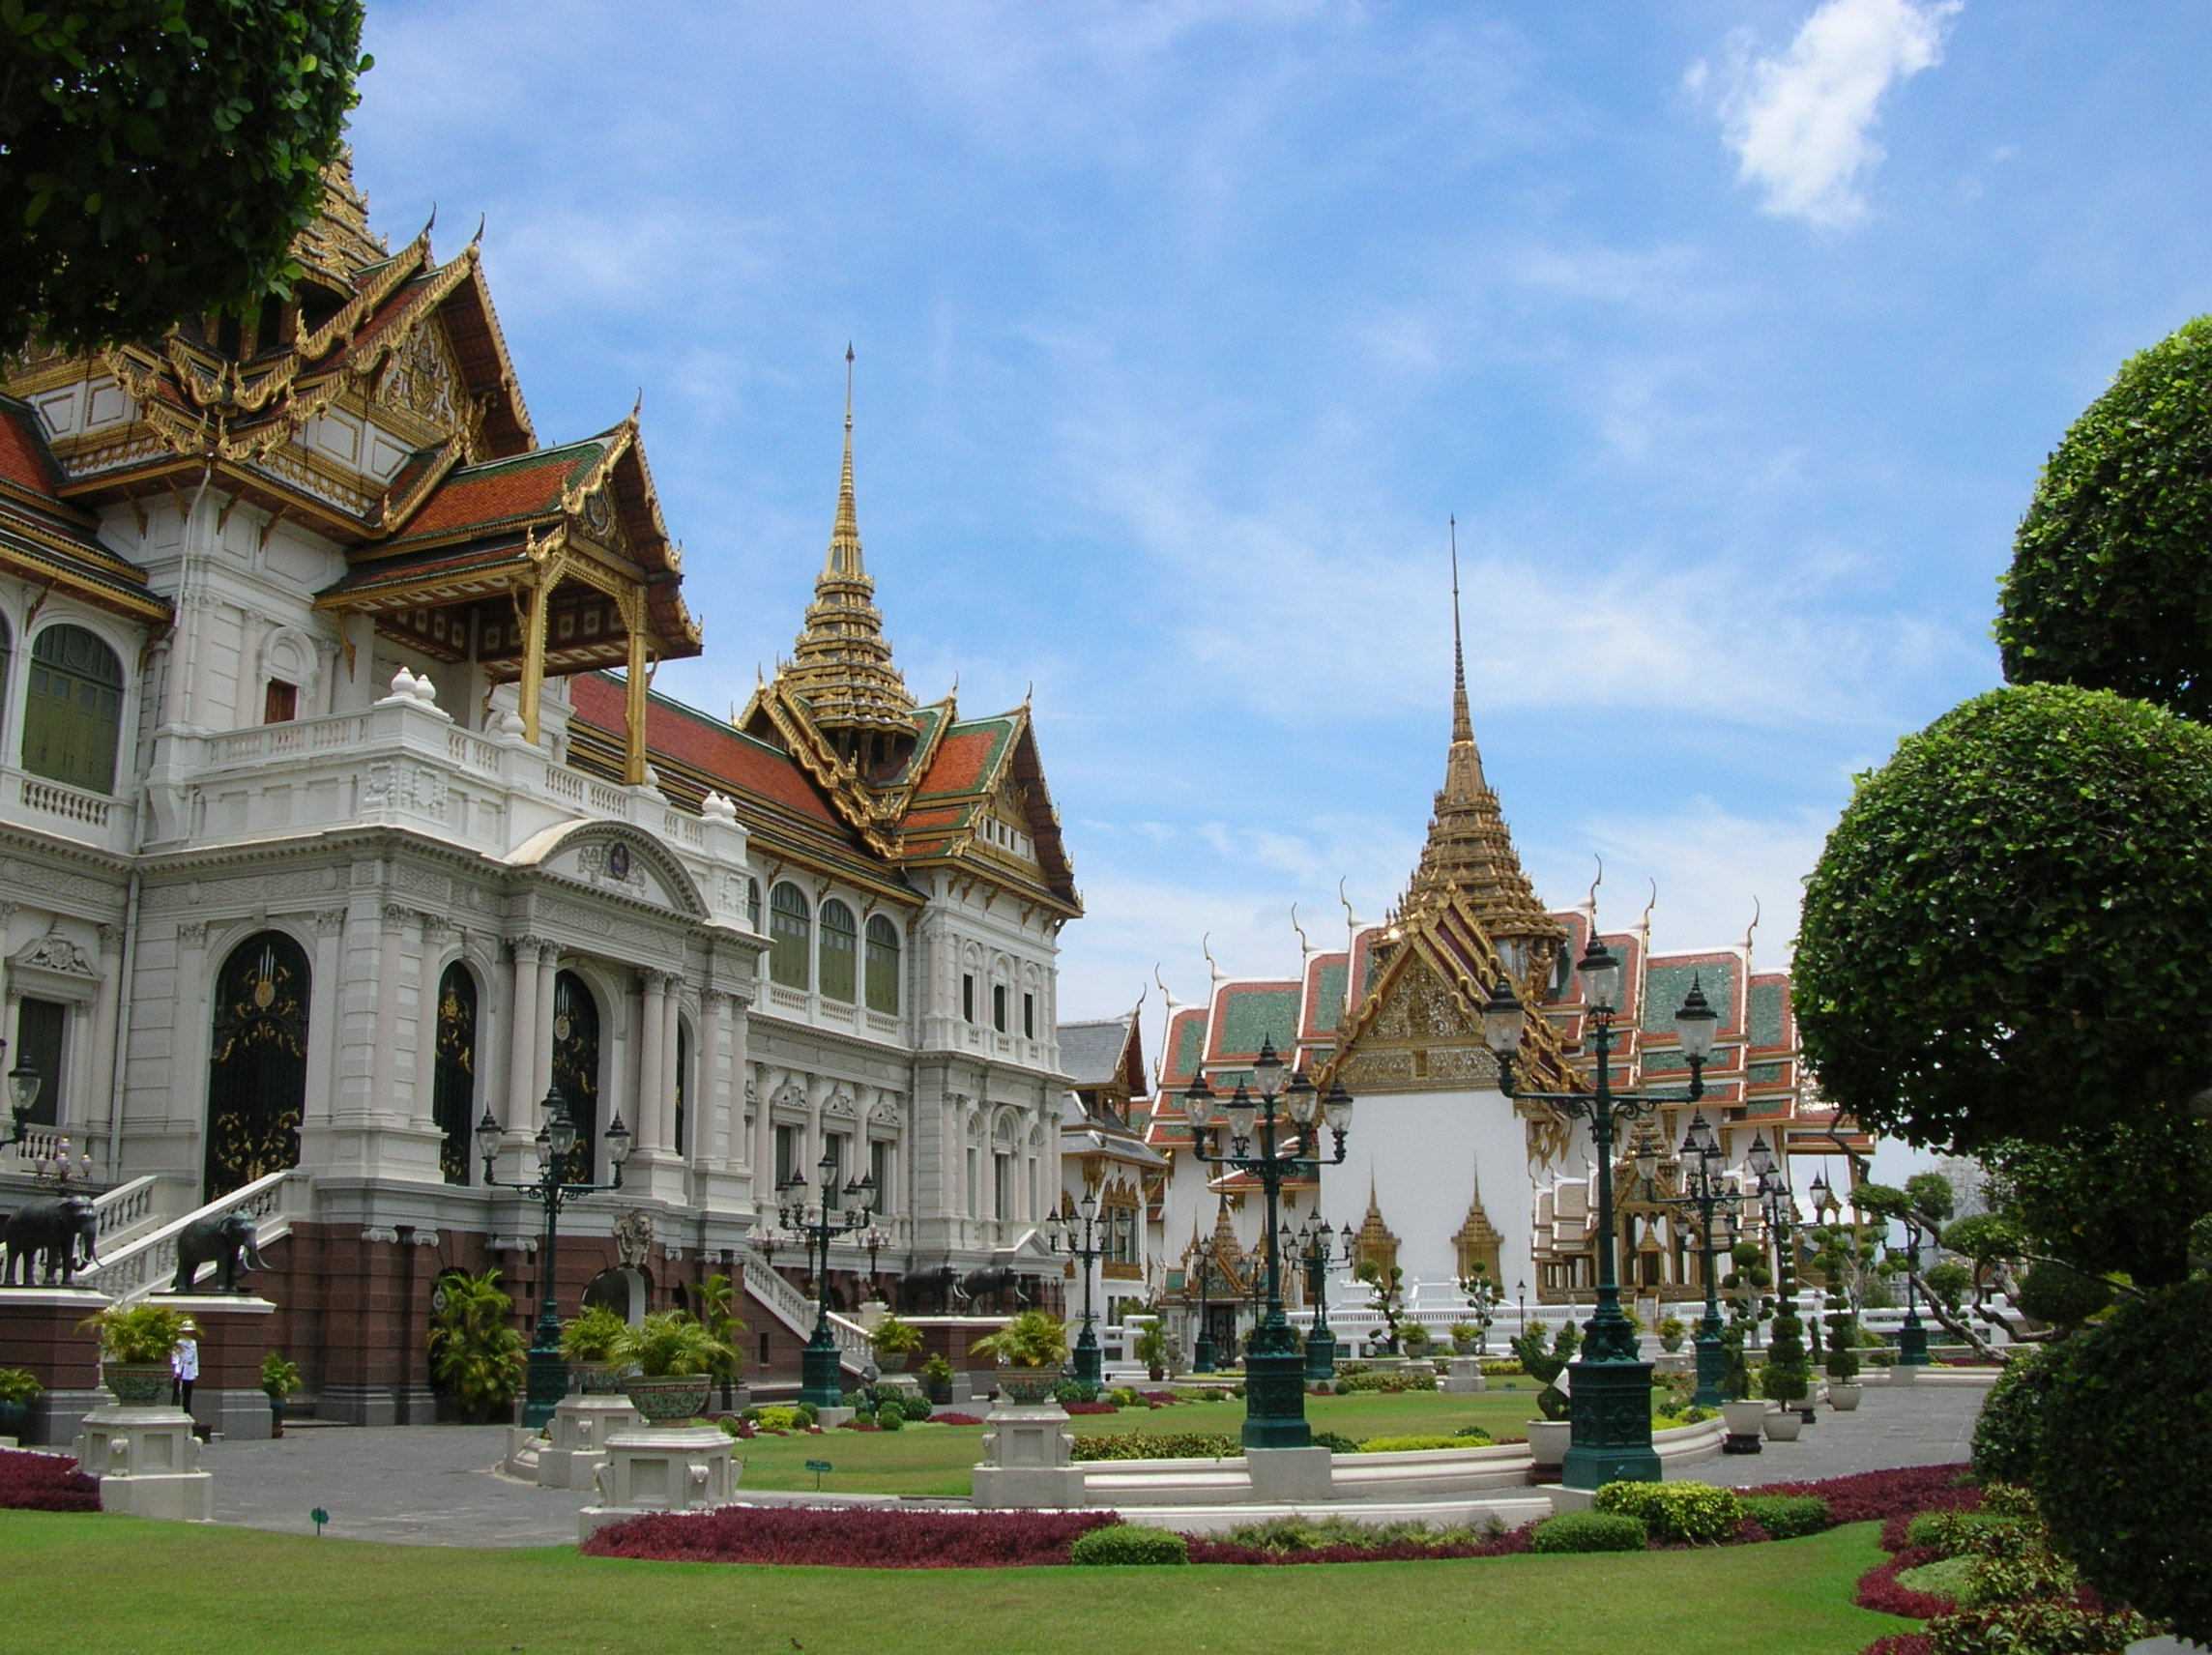 Бангкок описание. Королевский дворец в Бангкоке. Большой Королевский дворец Бангкок Таиланд. Императорский дворец Тайланд. Гранд Палас Бангкок.